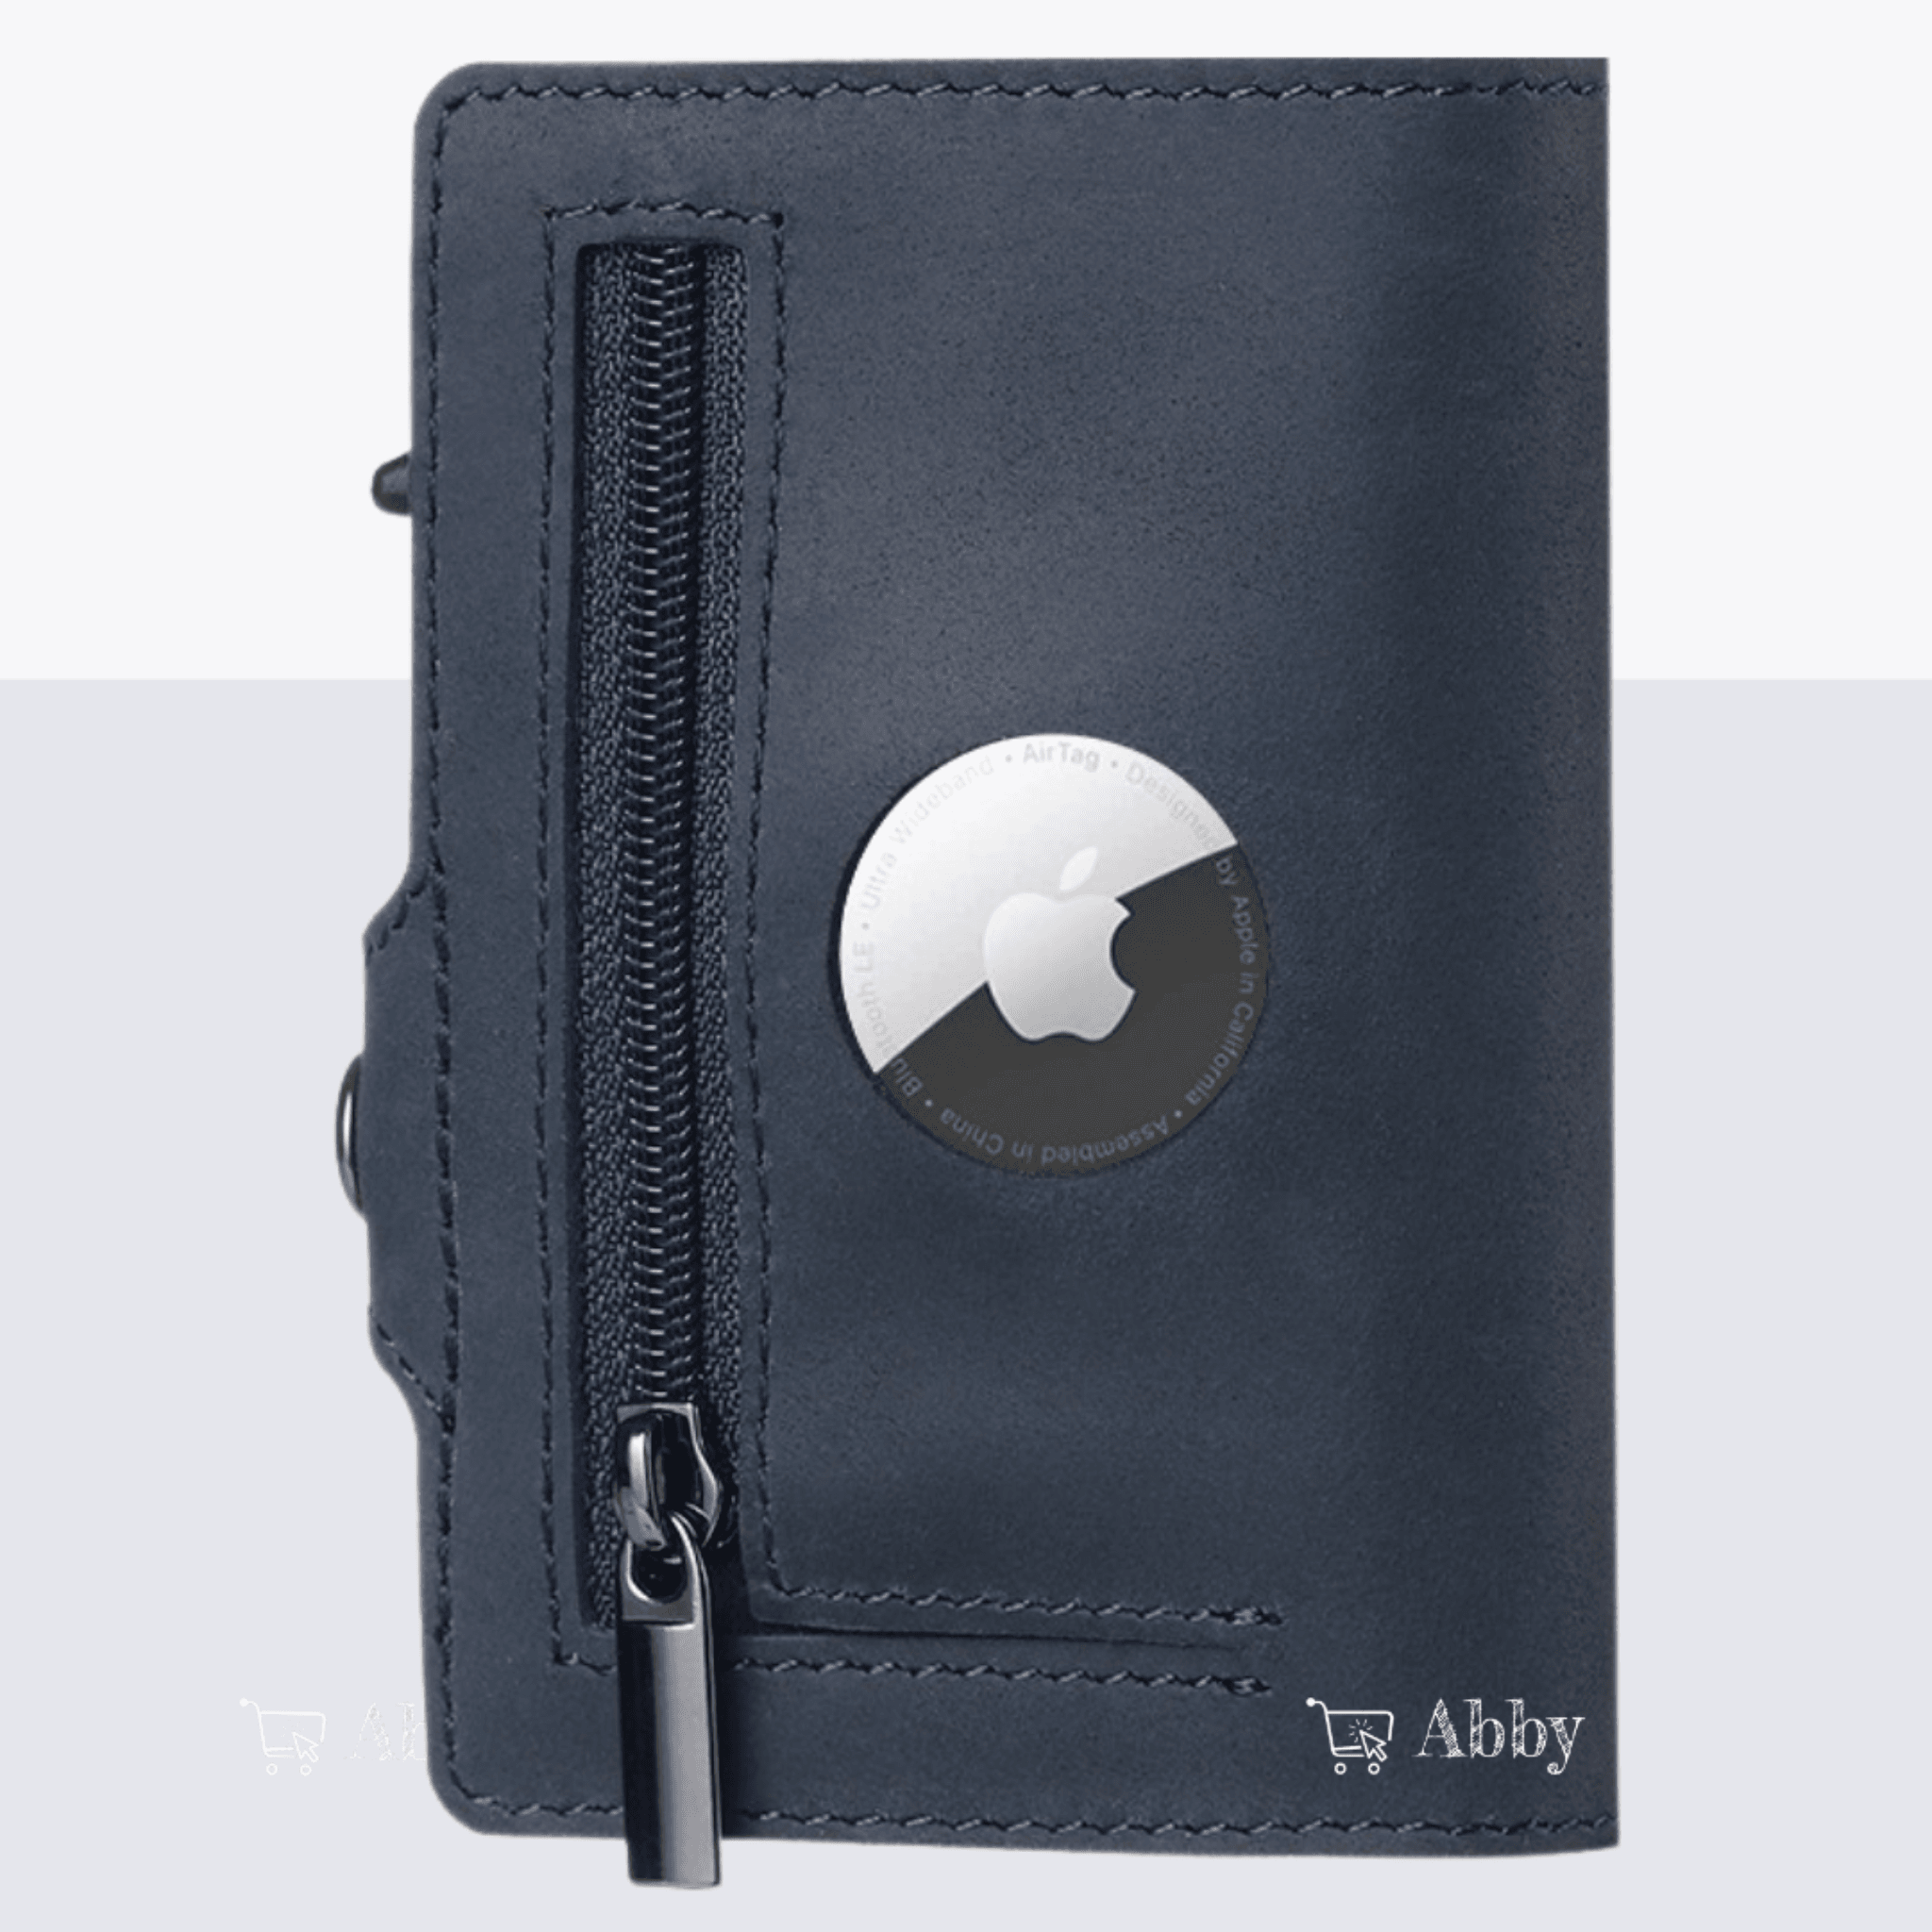 Abby's AirTag Wallet, Cards holder w/ Apple AirTag Case – Abbycart